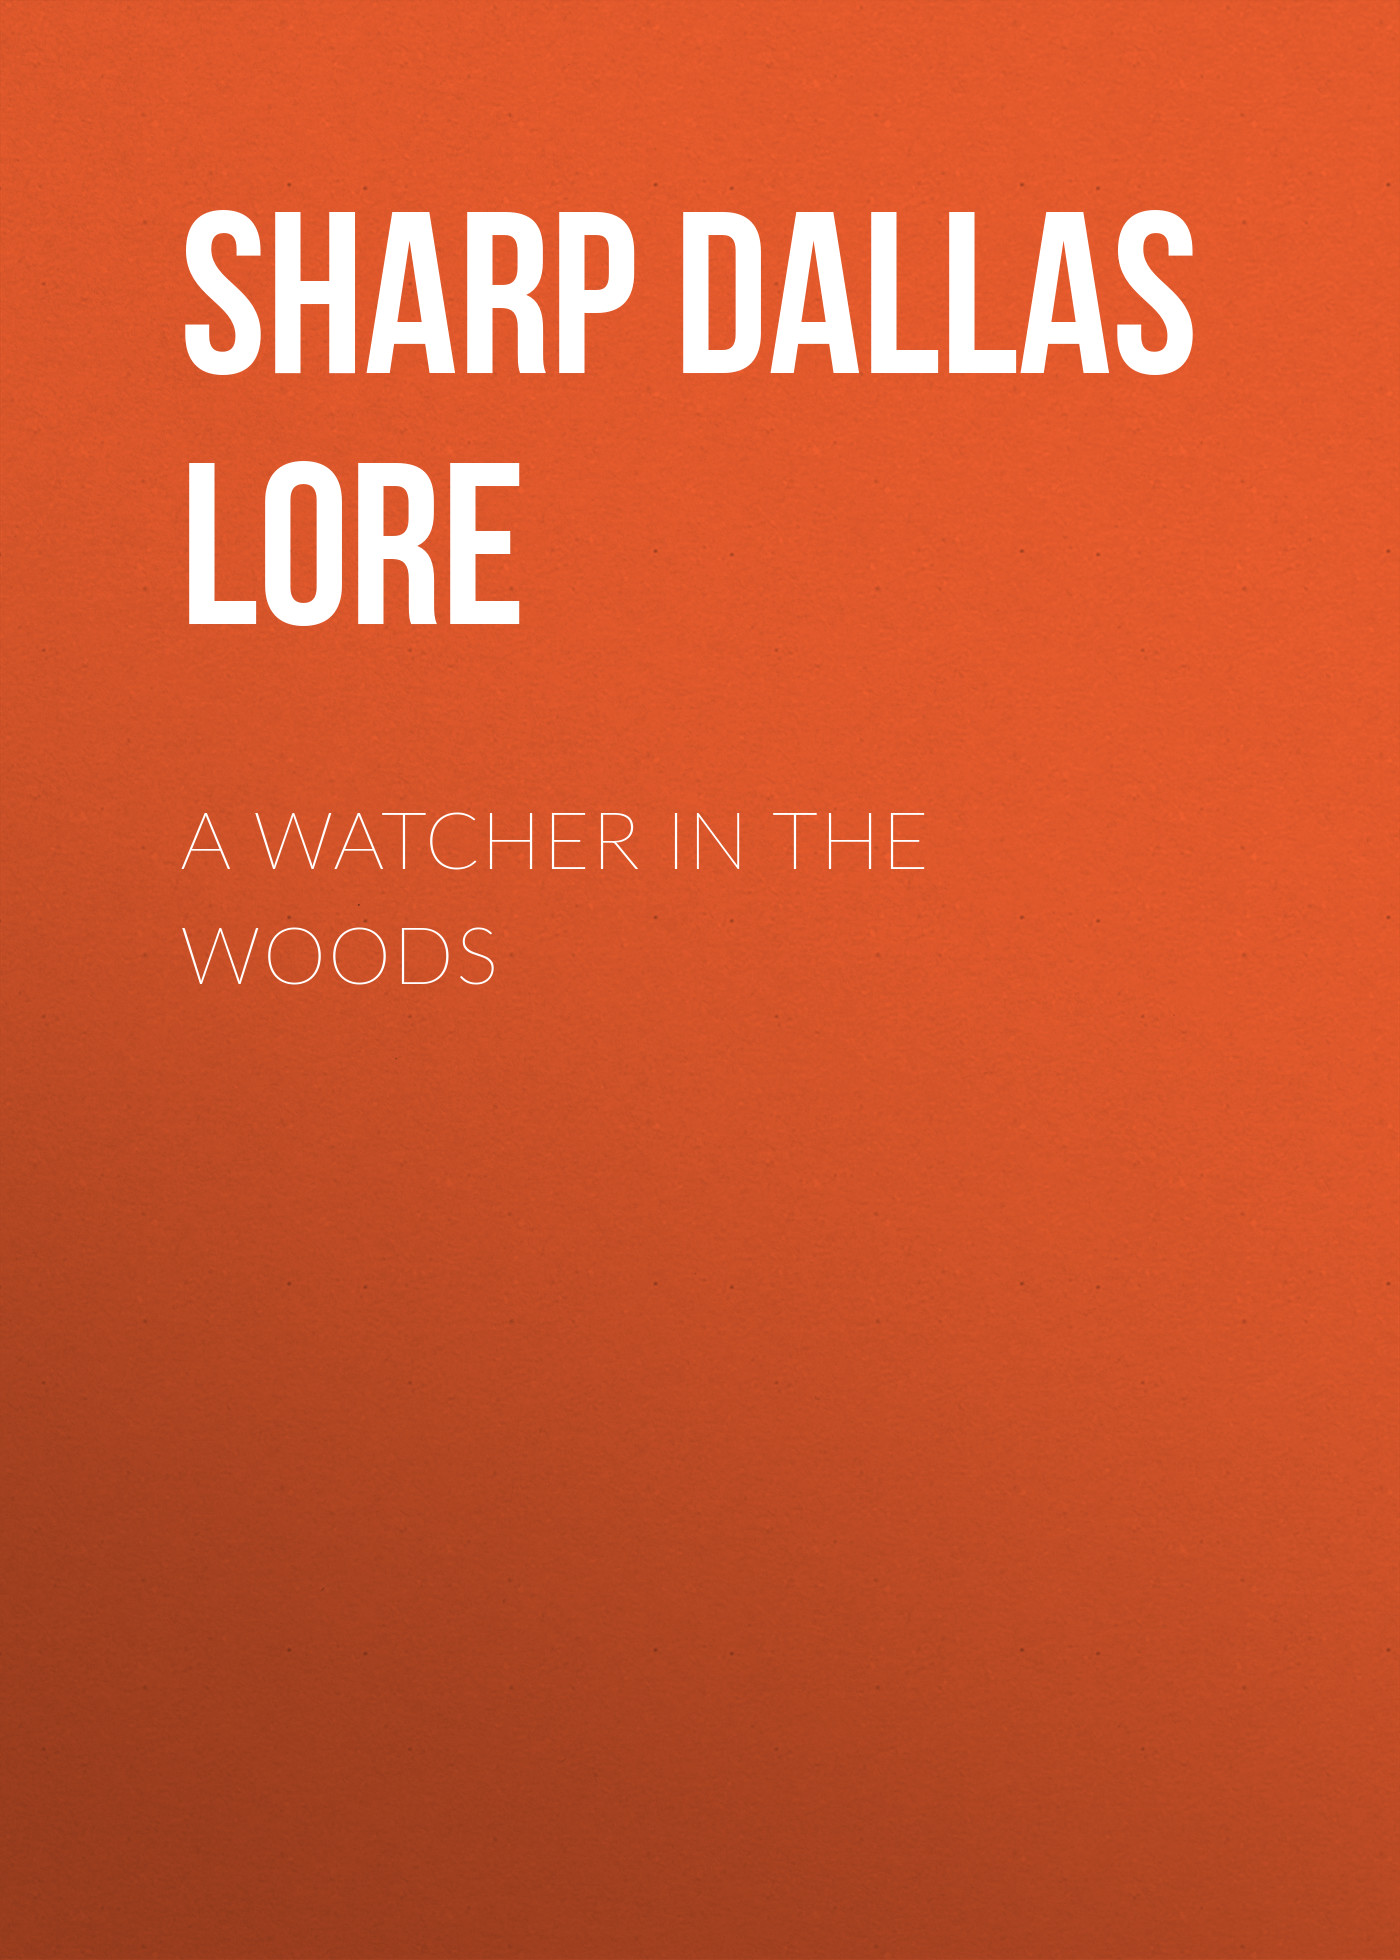 Книга A Watcher in The Woods из серии , созданная Dallas Sharp, может относится к жанру Природа и животные, Зарубежная старинная литература, Зарубежная классика. Стоимость электронной книги A Watcher in The Woods с идентификатором 25570311 составляет 0 руб.